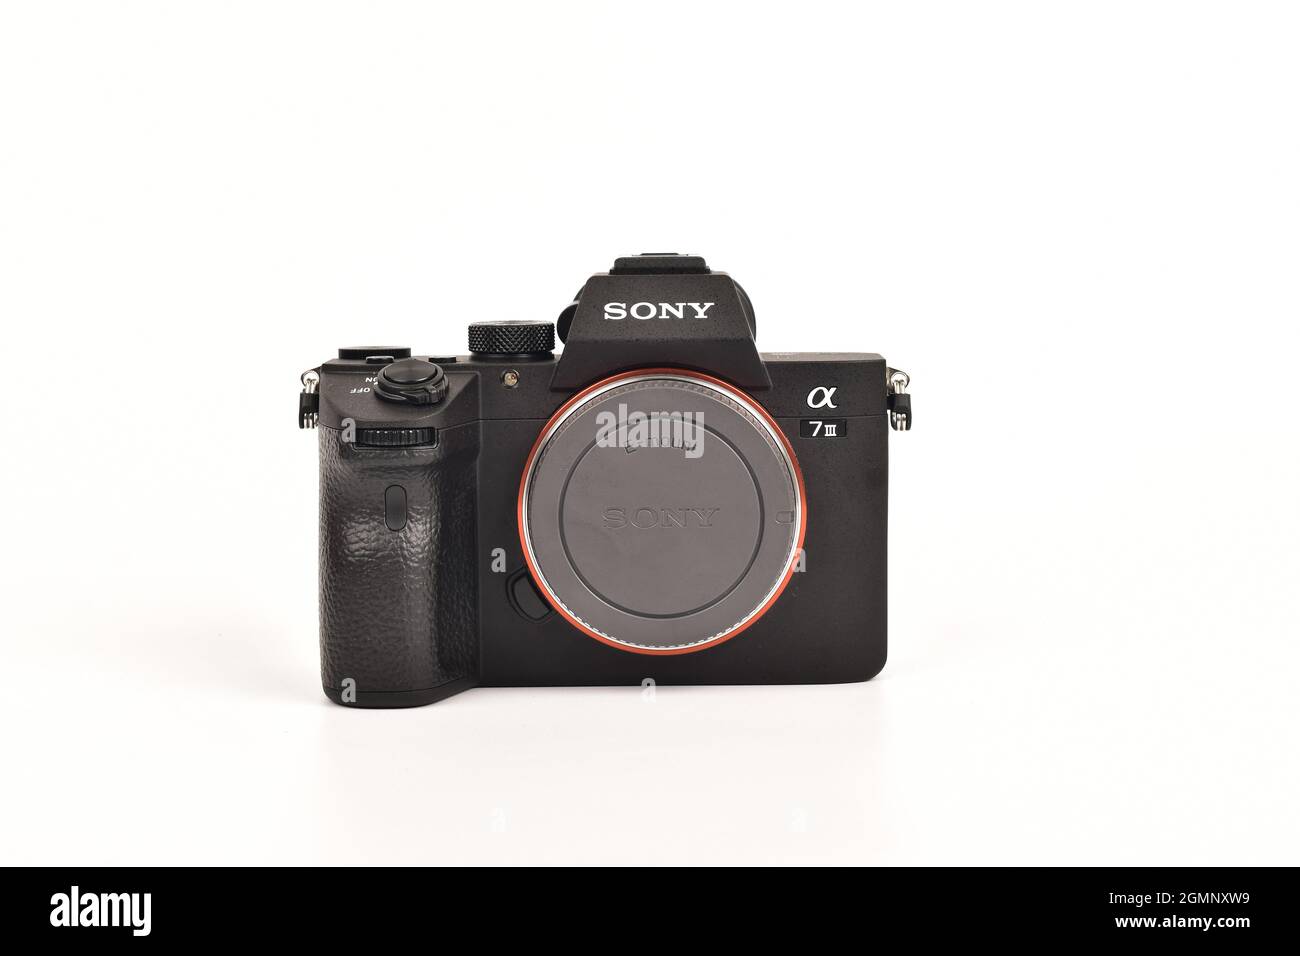 Sony alpha immagini e fotografie stock ad alta risoluzione - Alamy